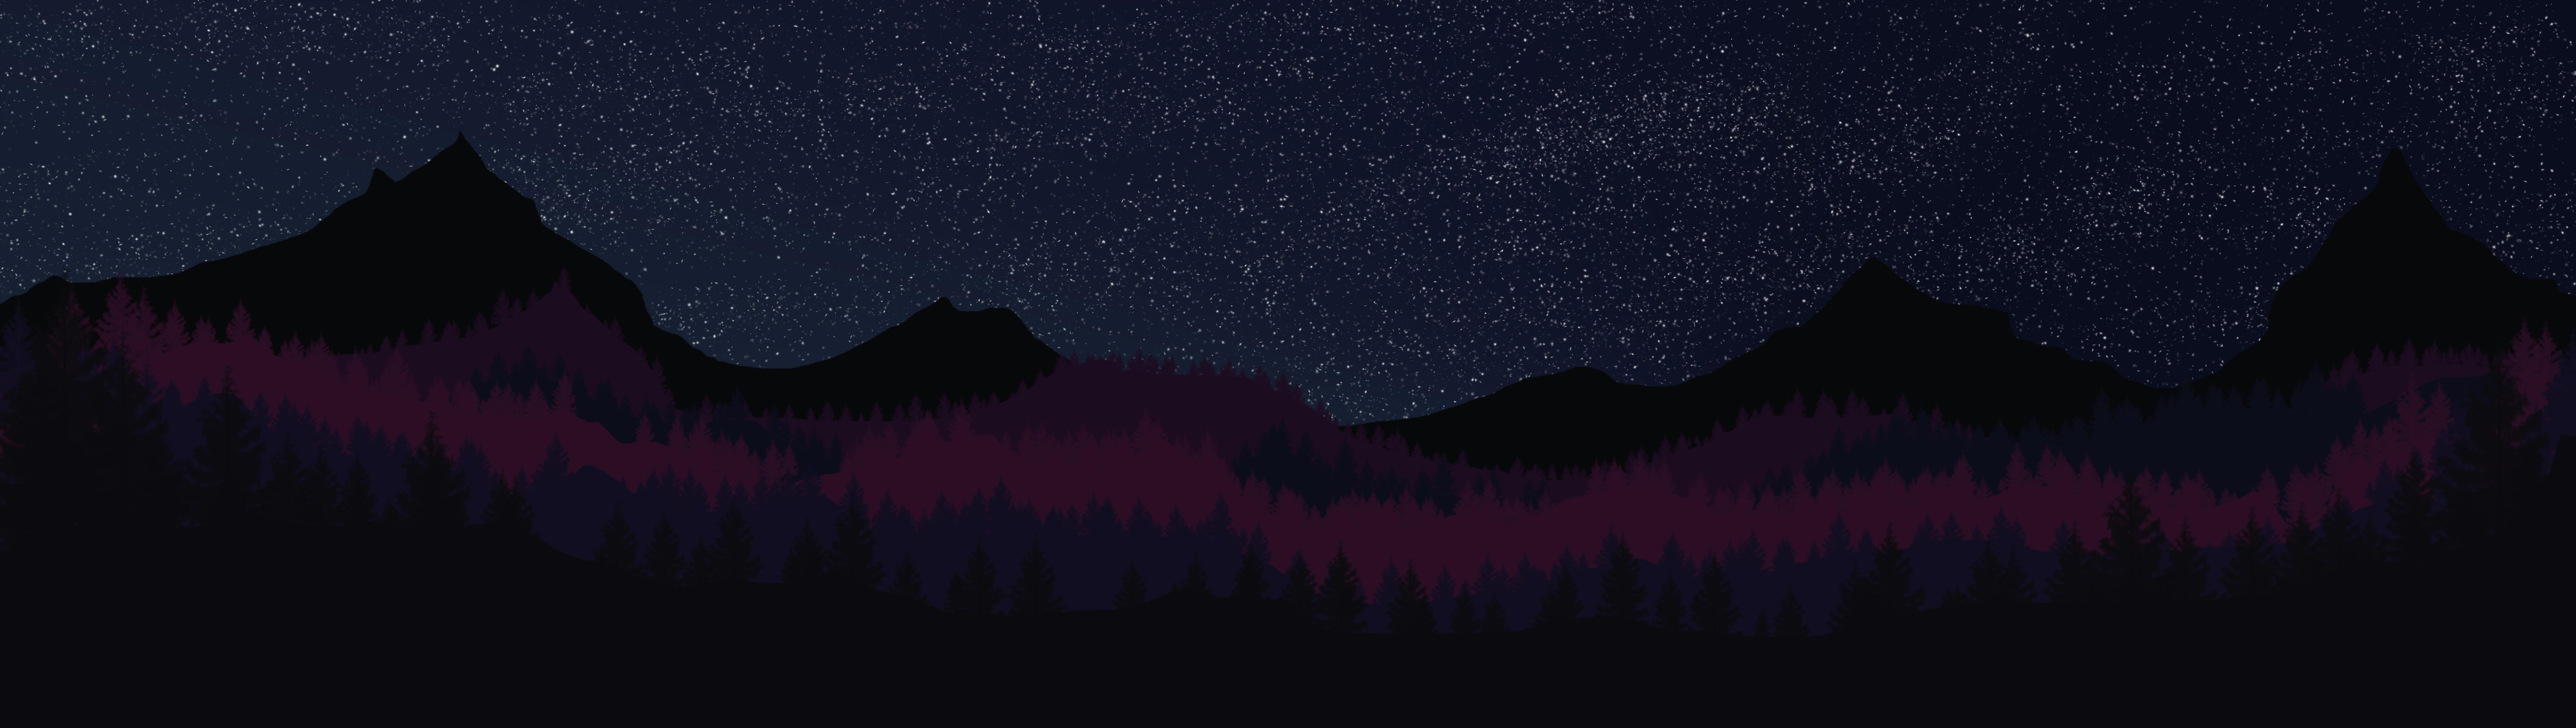 Pine Mountain at Night 4K wallpaper